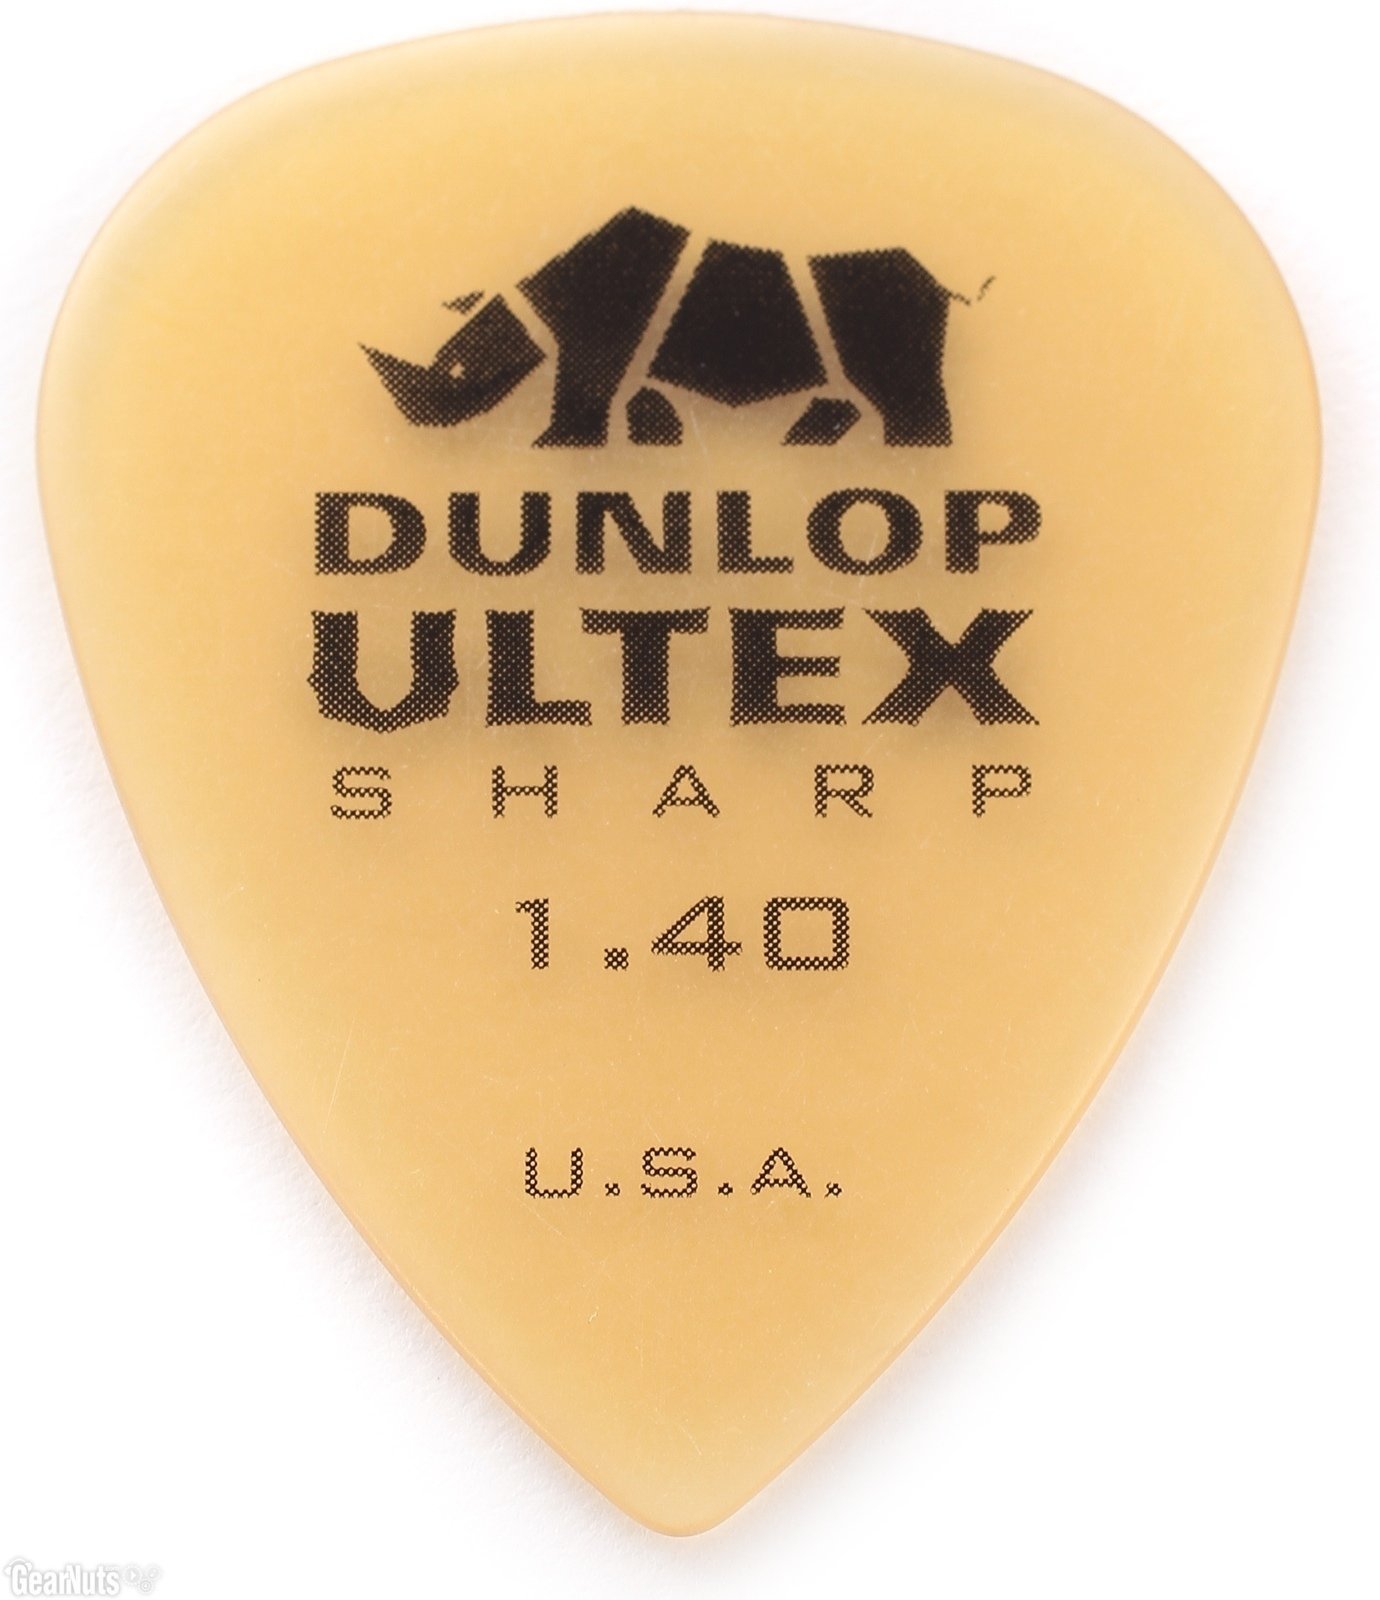 Pengető Dunlop 433P 140 Ultex 1,40 mm Pengető